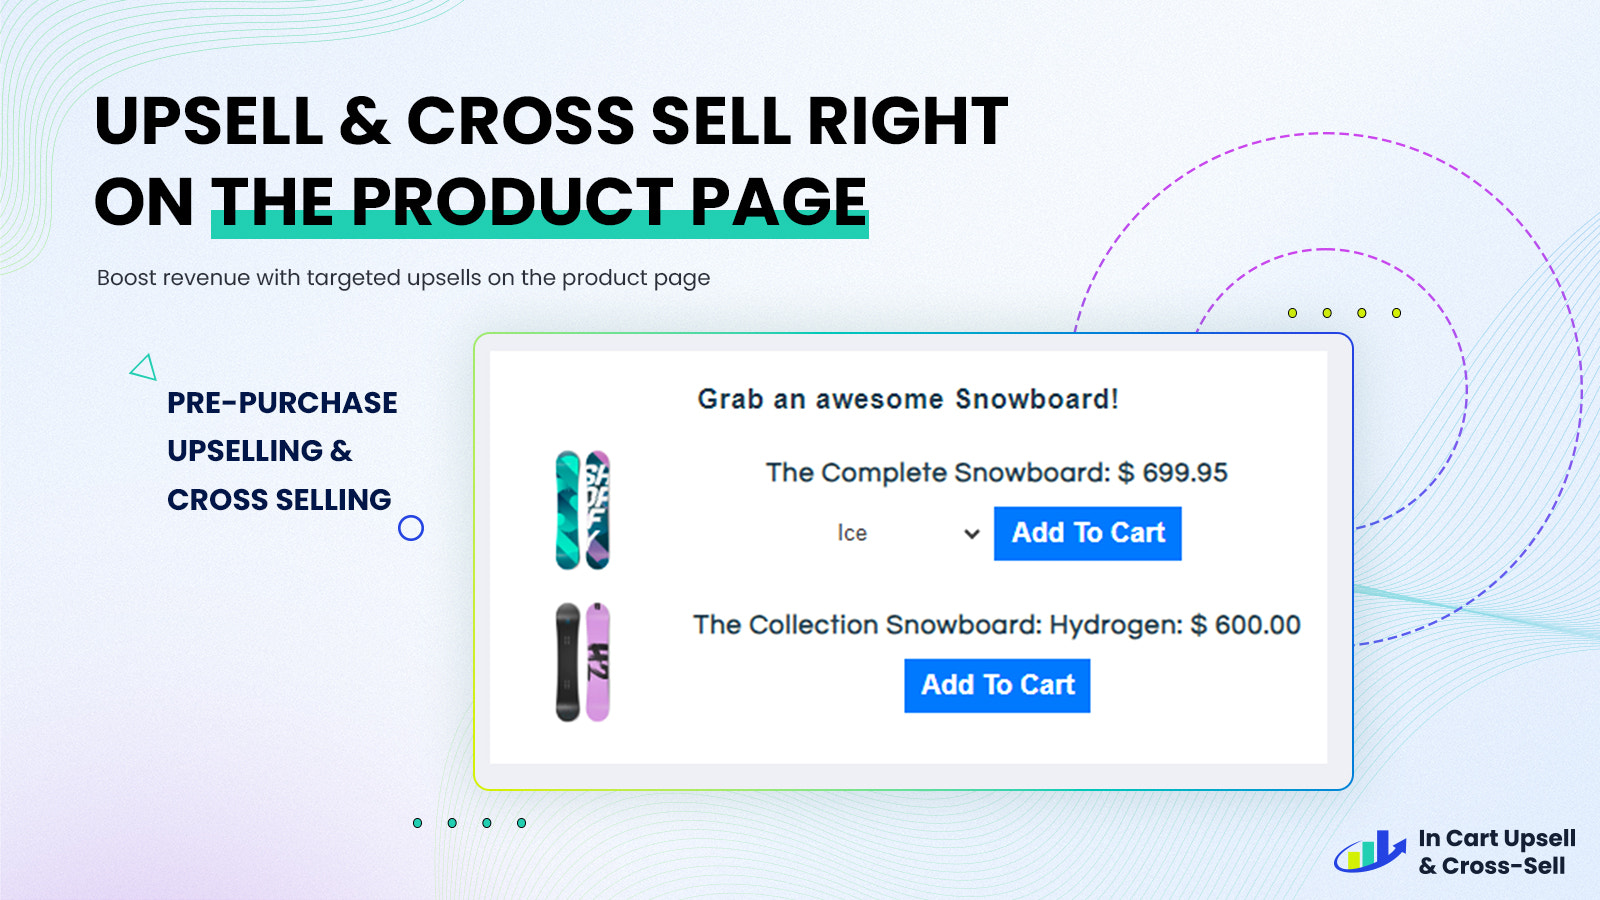 Bied upsells & cross sells aan op de productpagina